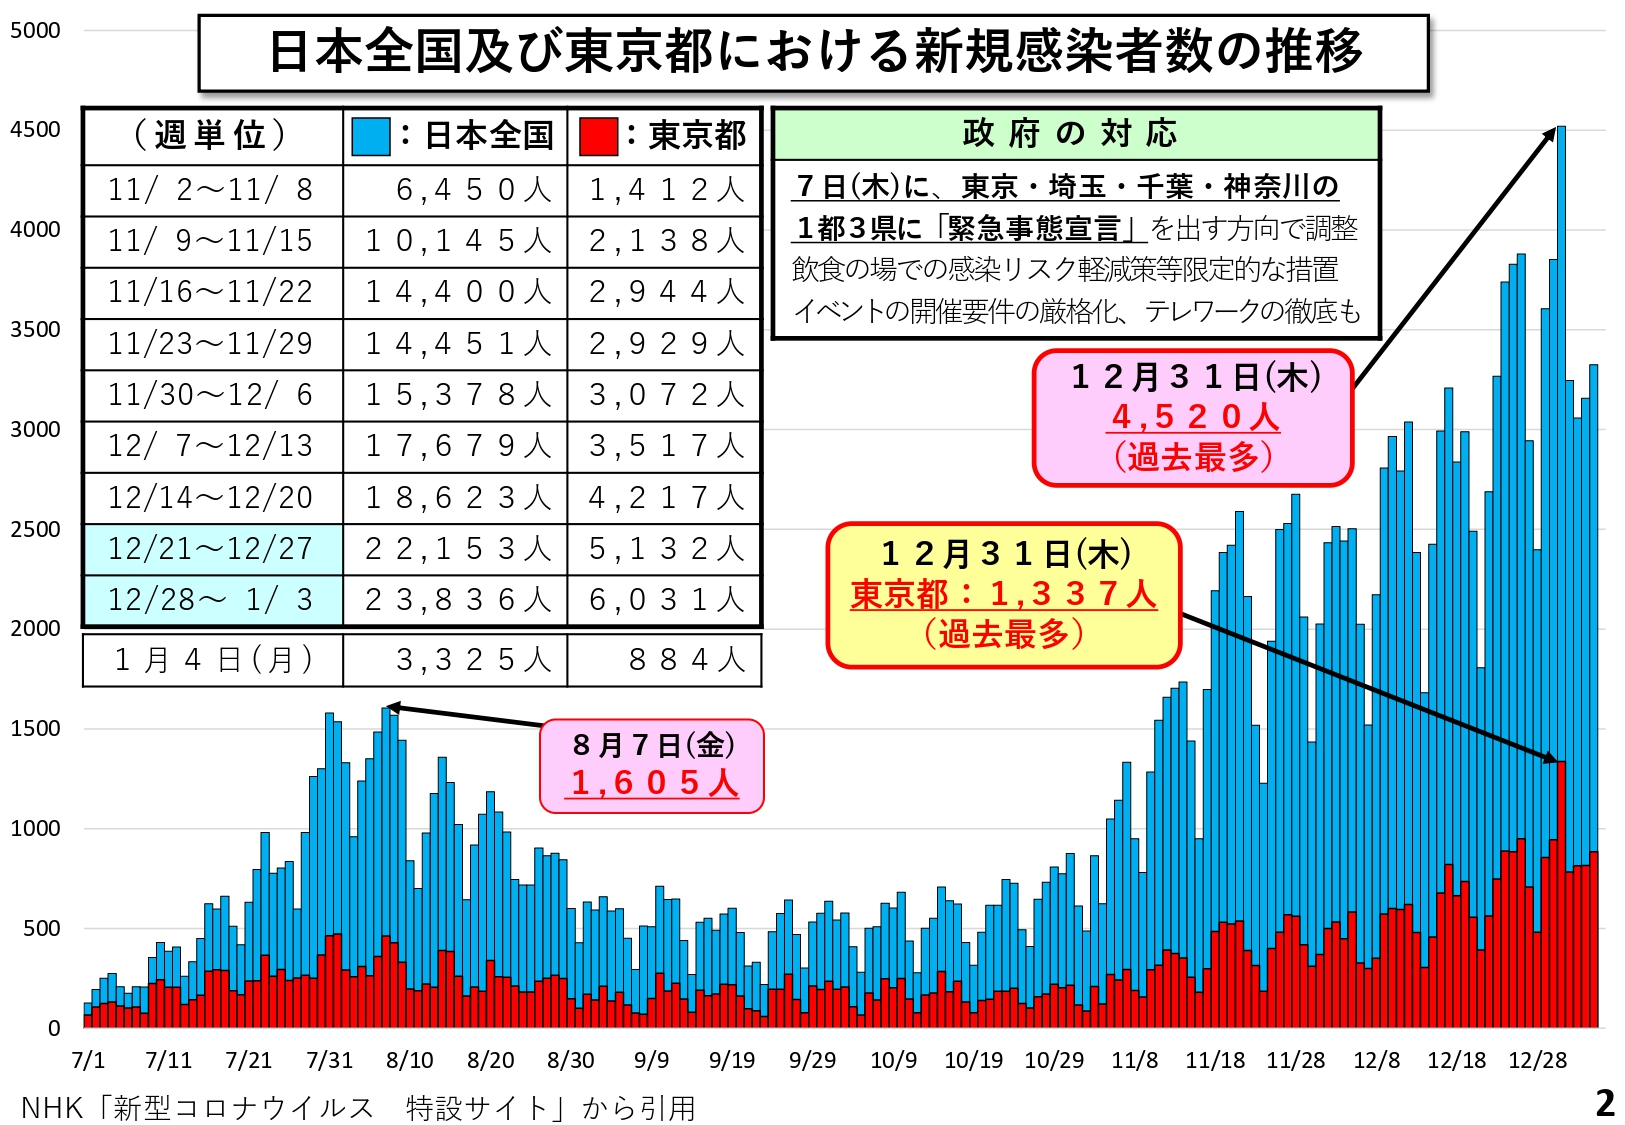 日本全国及び東京都における新規感染者数の推移